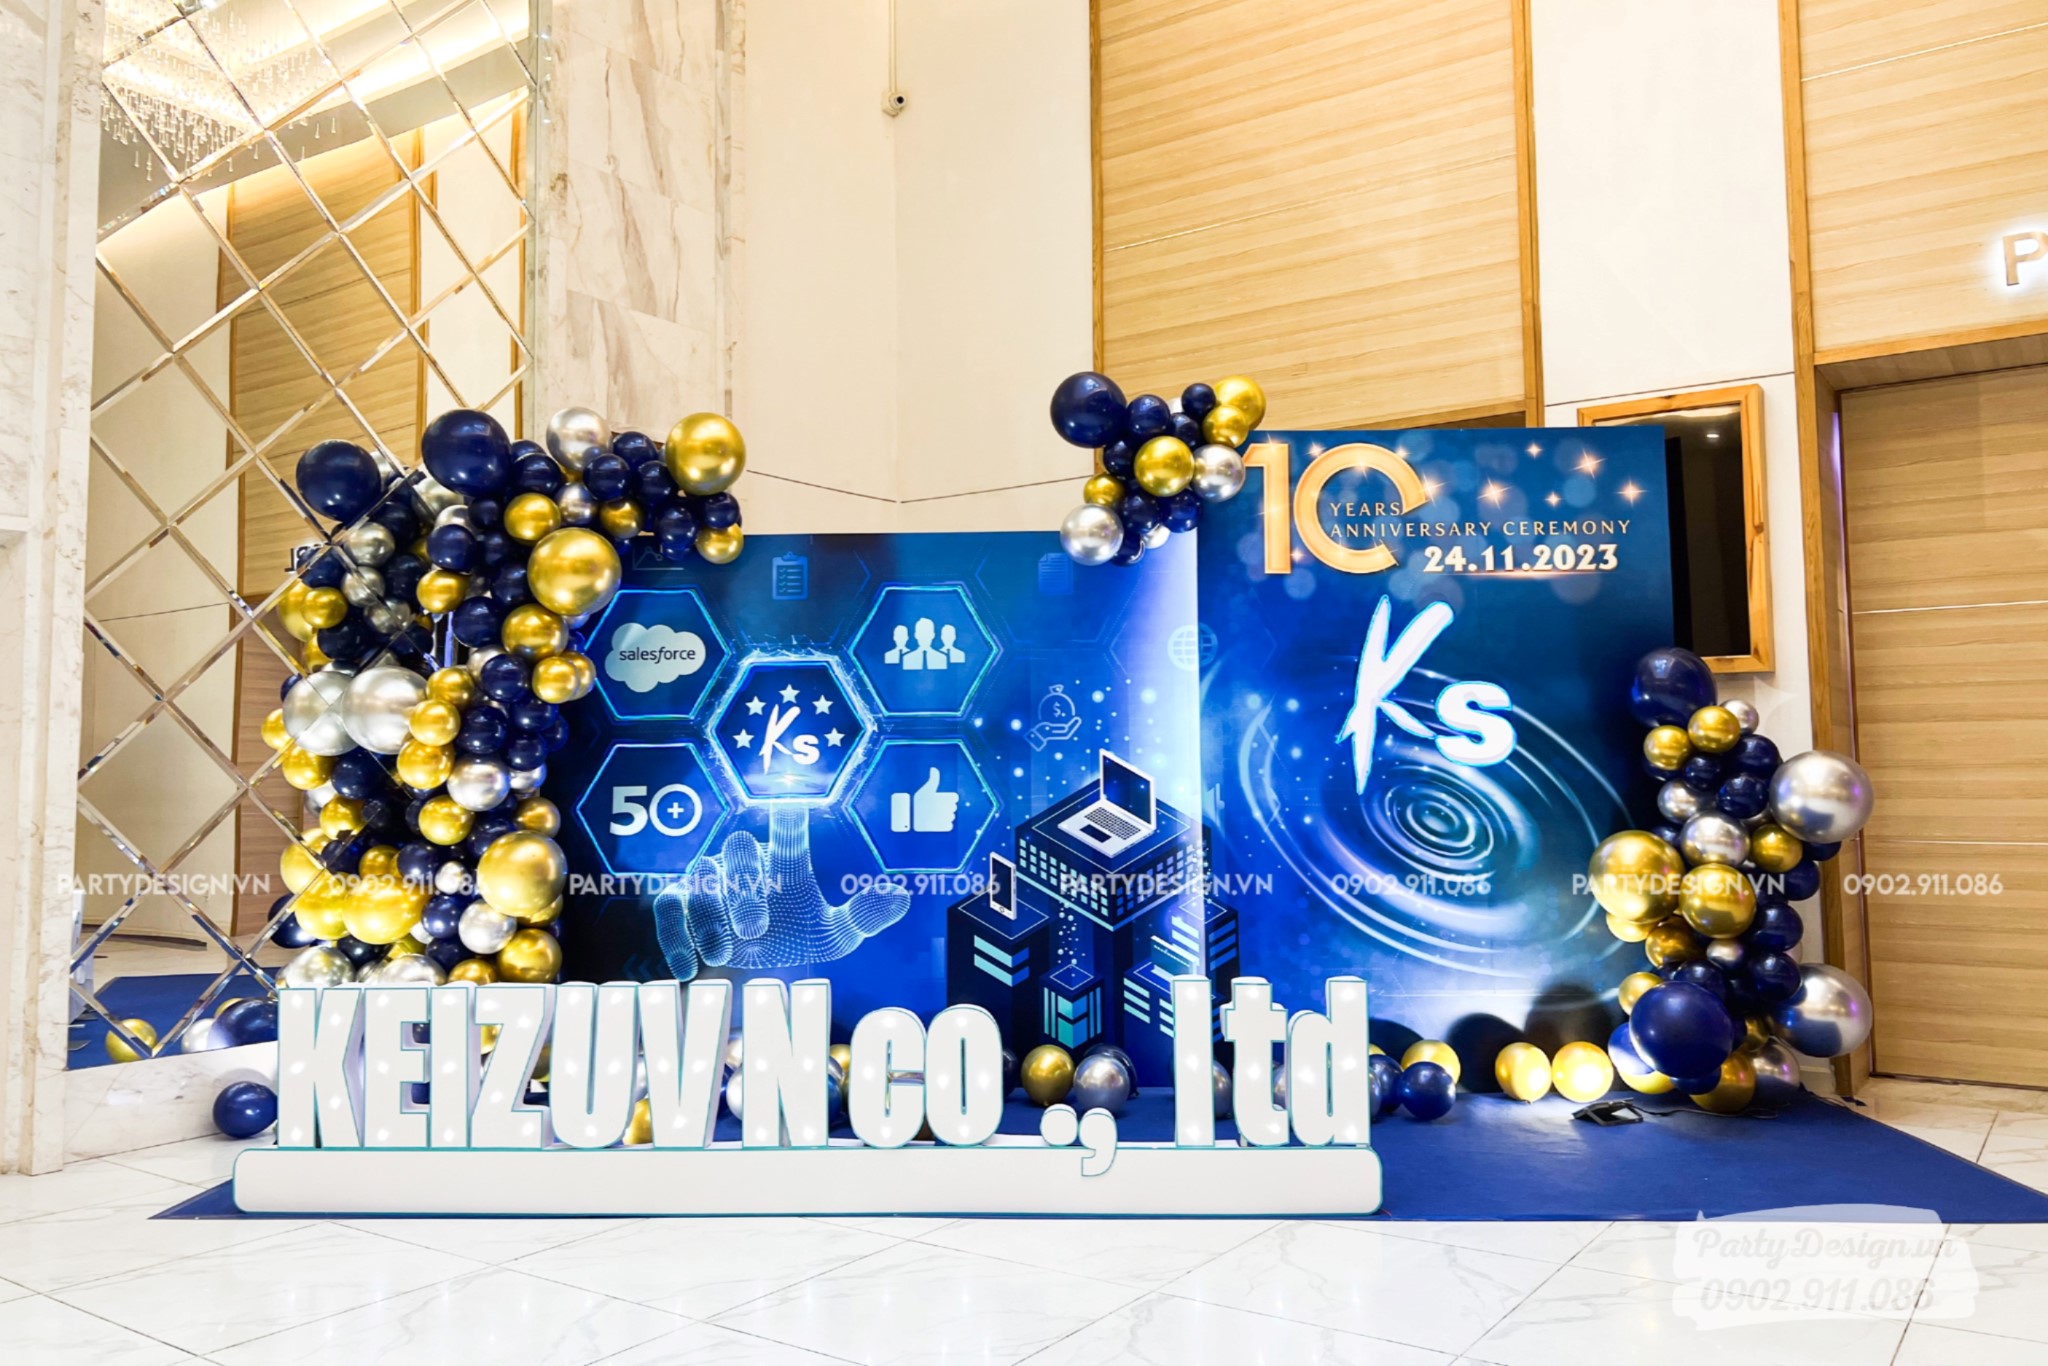 Mẫu backdrop sinh nhật công ty, màu xanh dương, công nghệ và hiện đại - Keizuvn